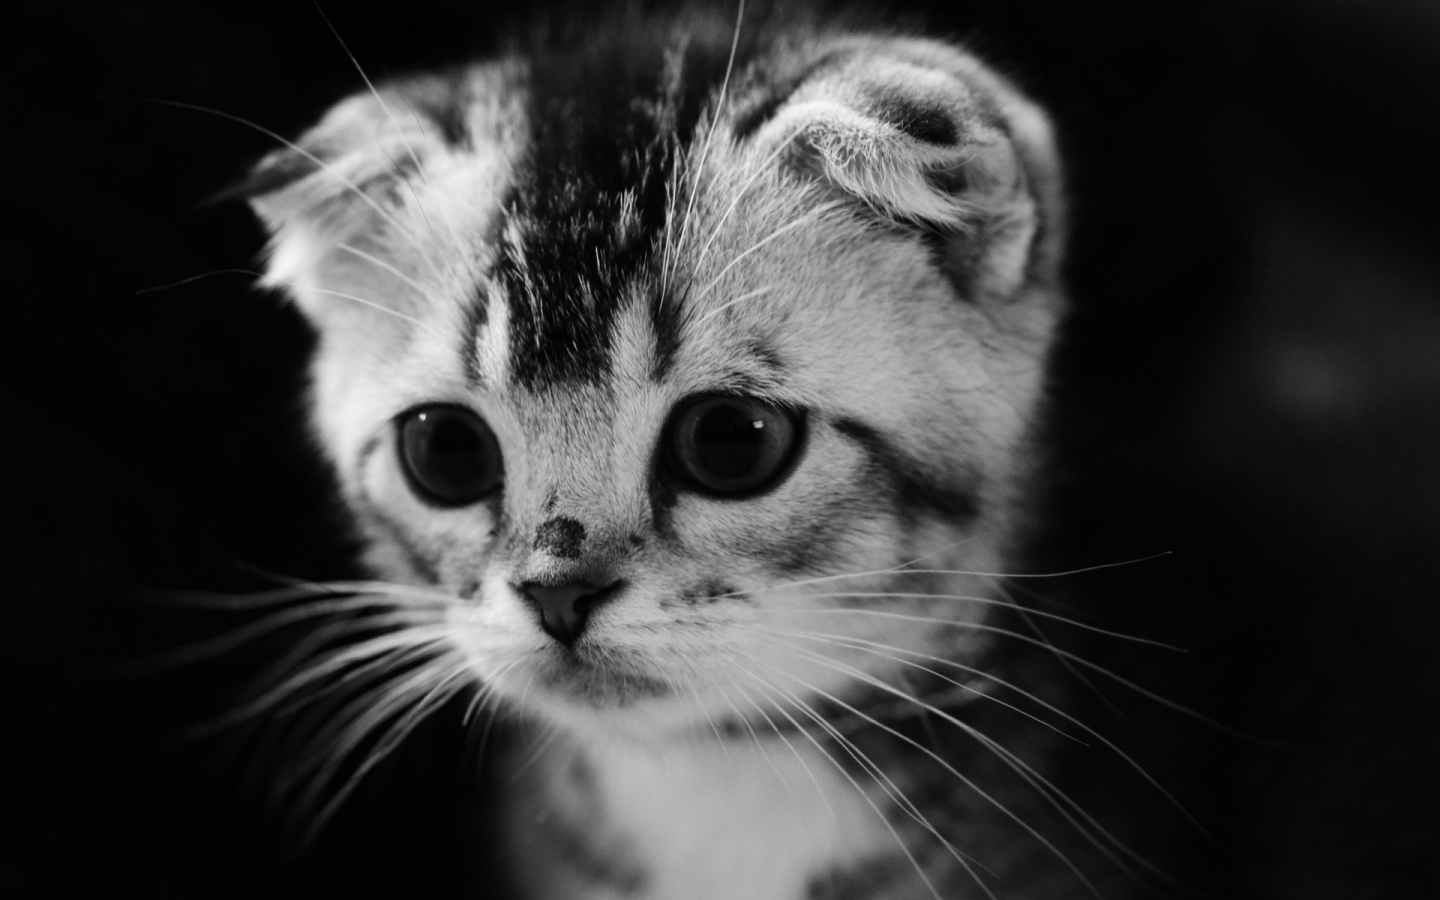 Cute Gray Kitten for 1440 x 900 widescreen resolution